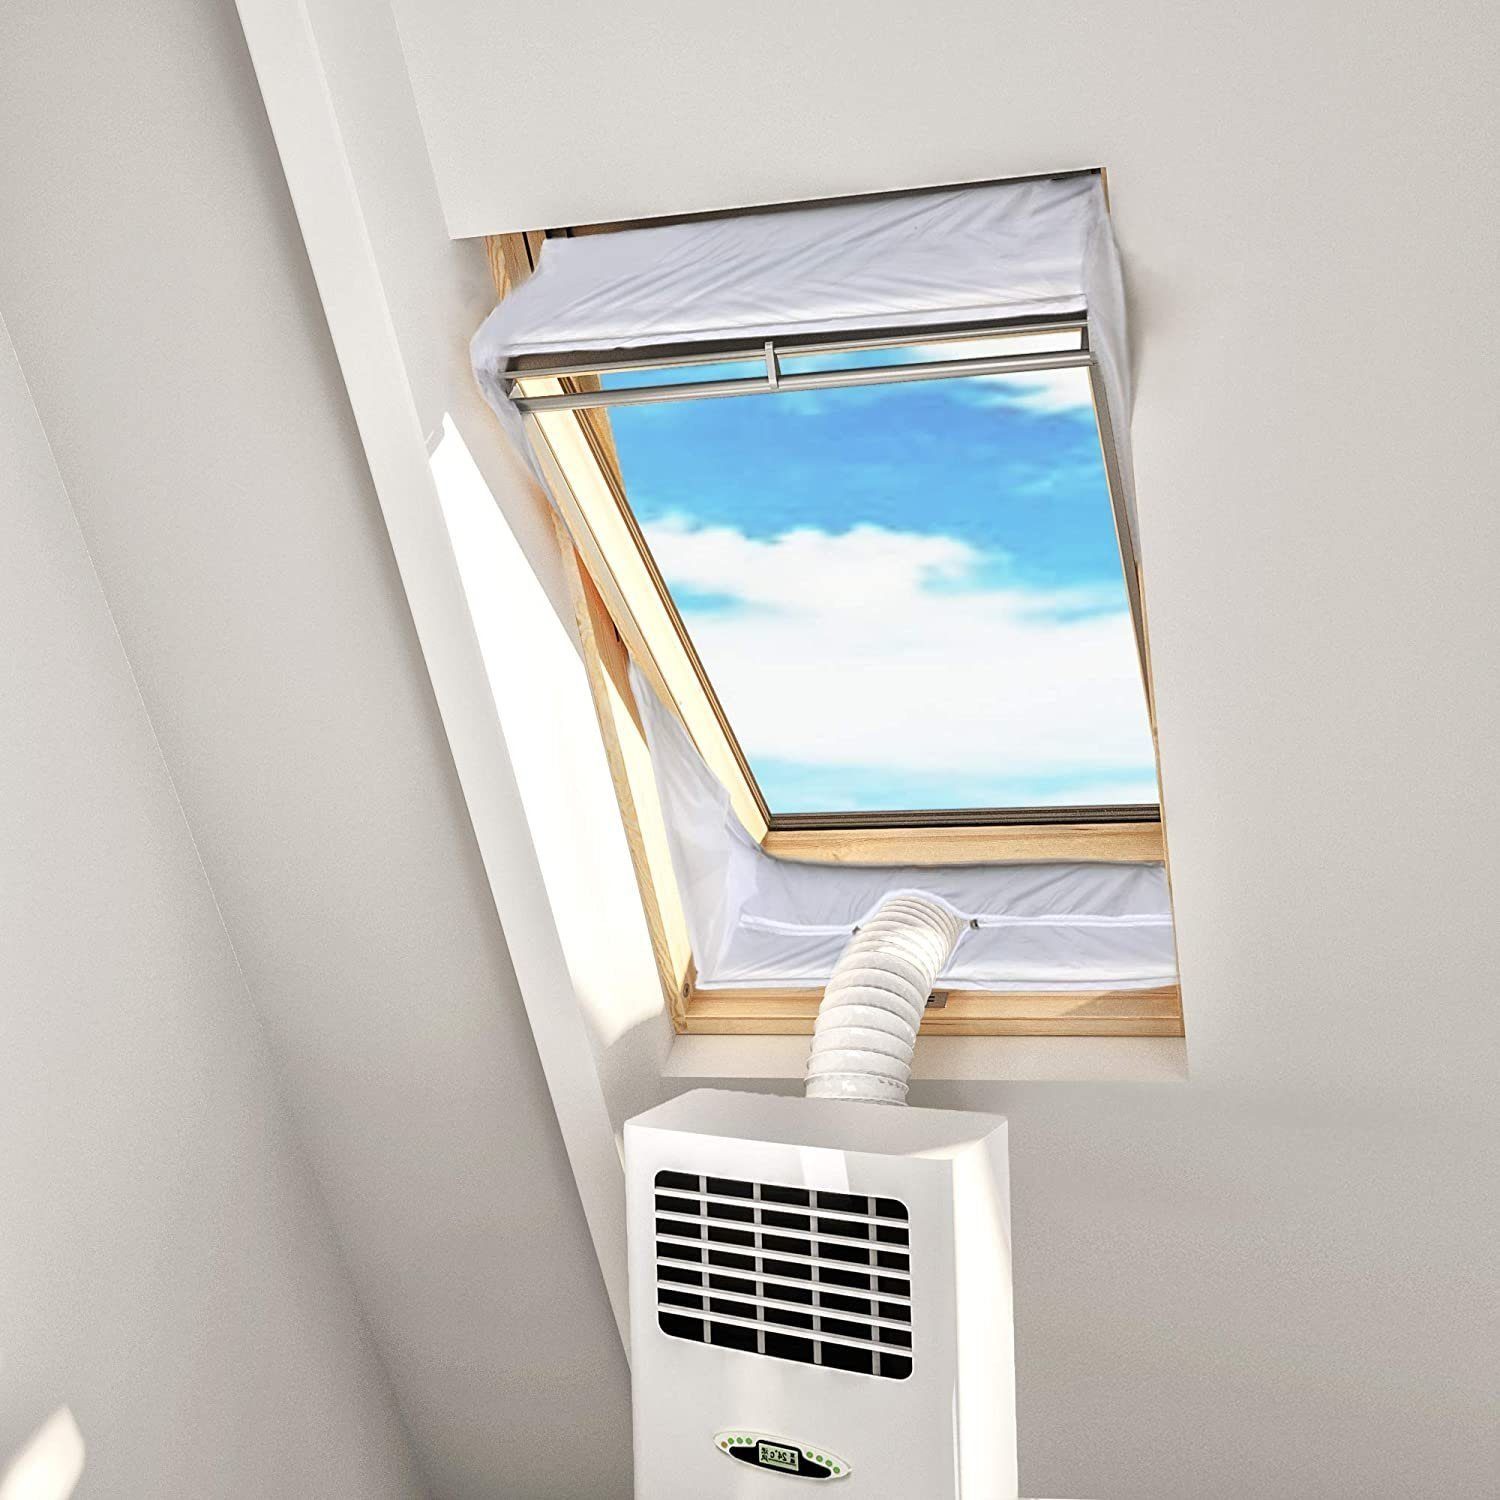 Fensterstopper Fensterabdichtung für Mobile Klimageräte Set, Fensterkitt Dachfenster, autolock